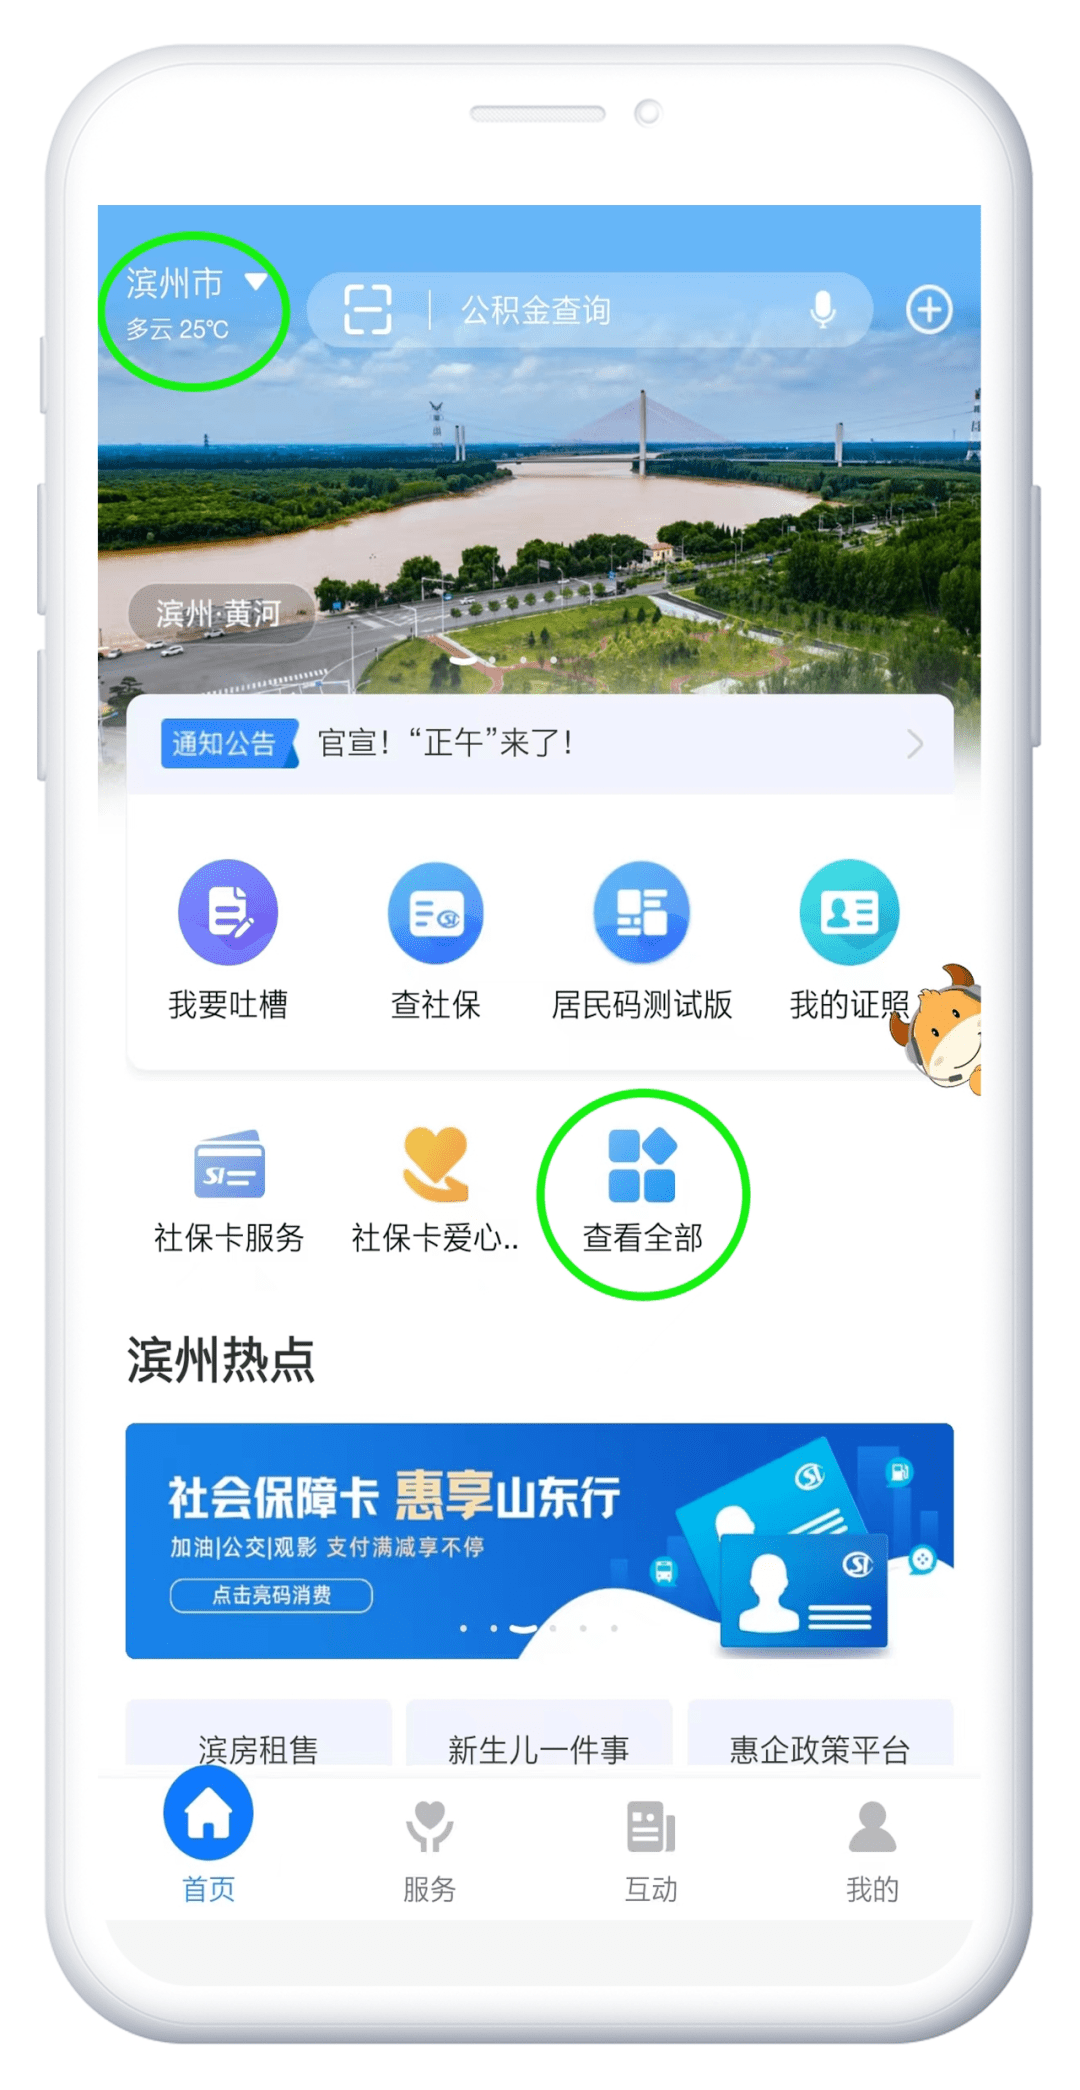 手机app破解:关于“滨州智慧人社”手机APP停止服务的公告